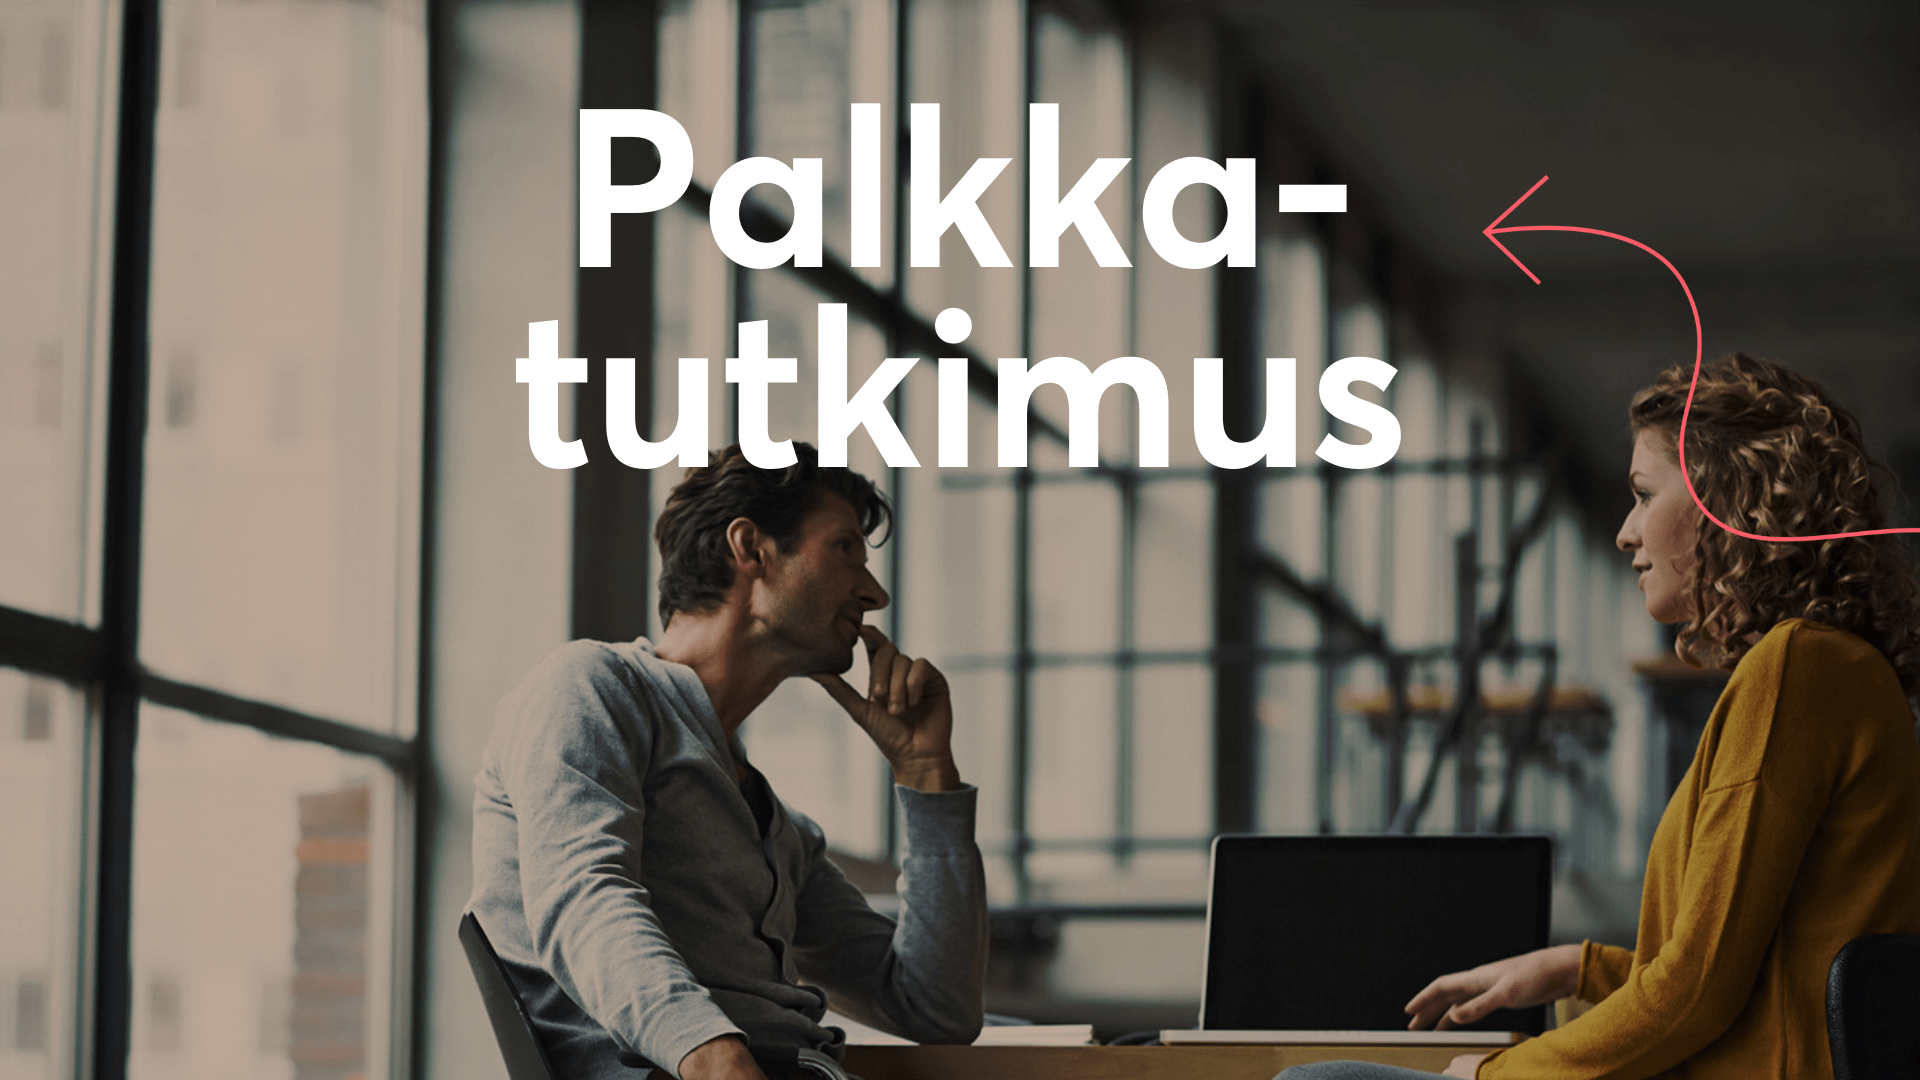 Ekonomien palkkatutkimus: nousua kautta linjan – julkinen sektori kuronut  eroa yksityiseen - Suomen Ekonomit